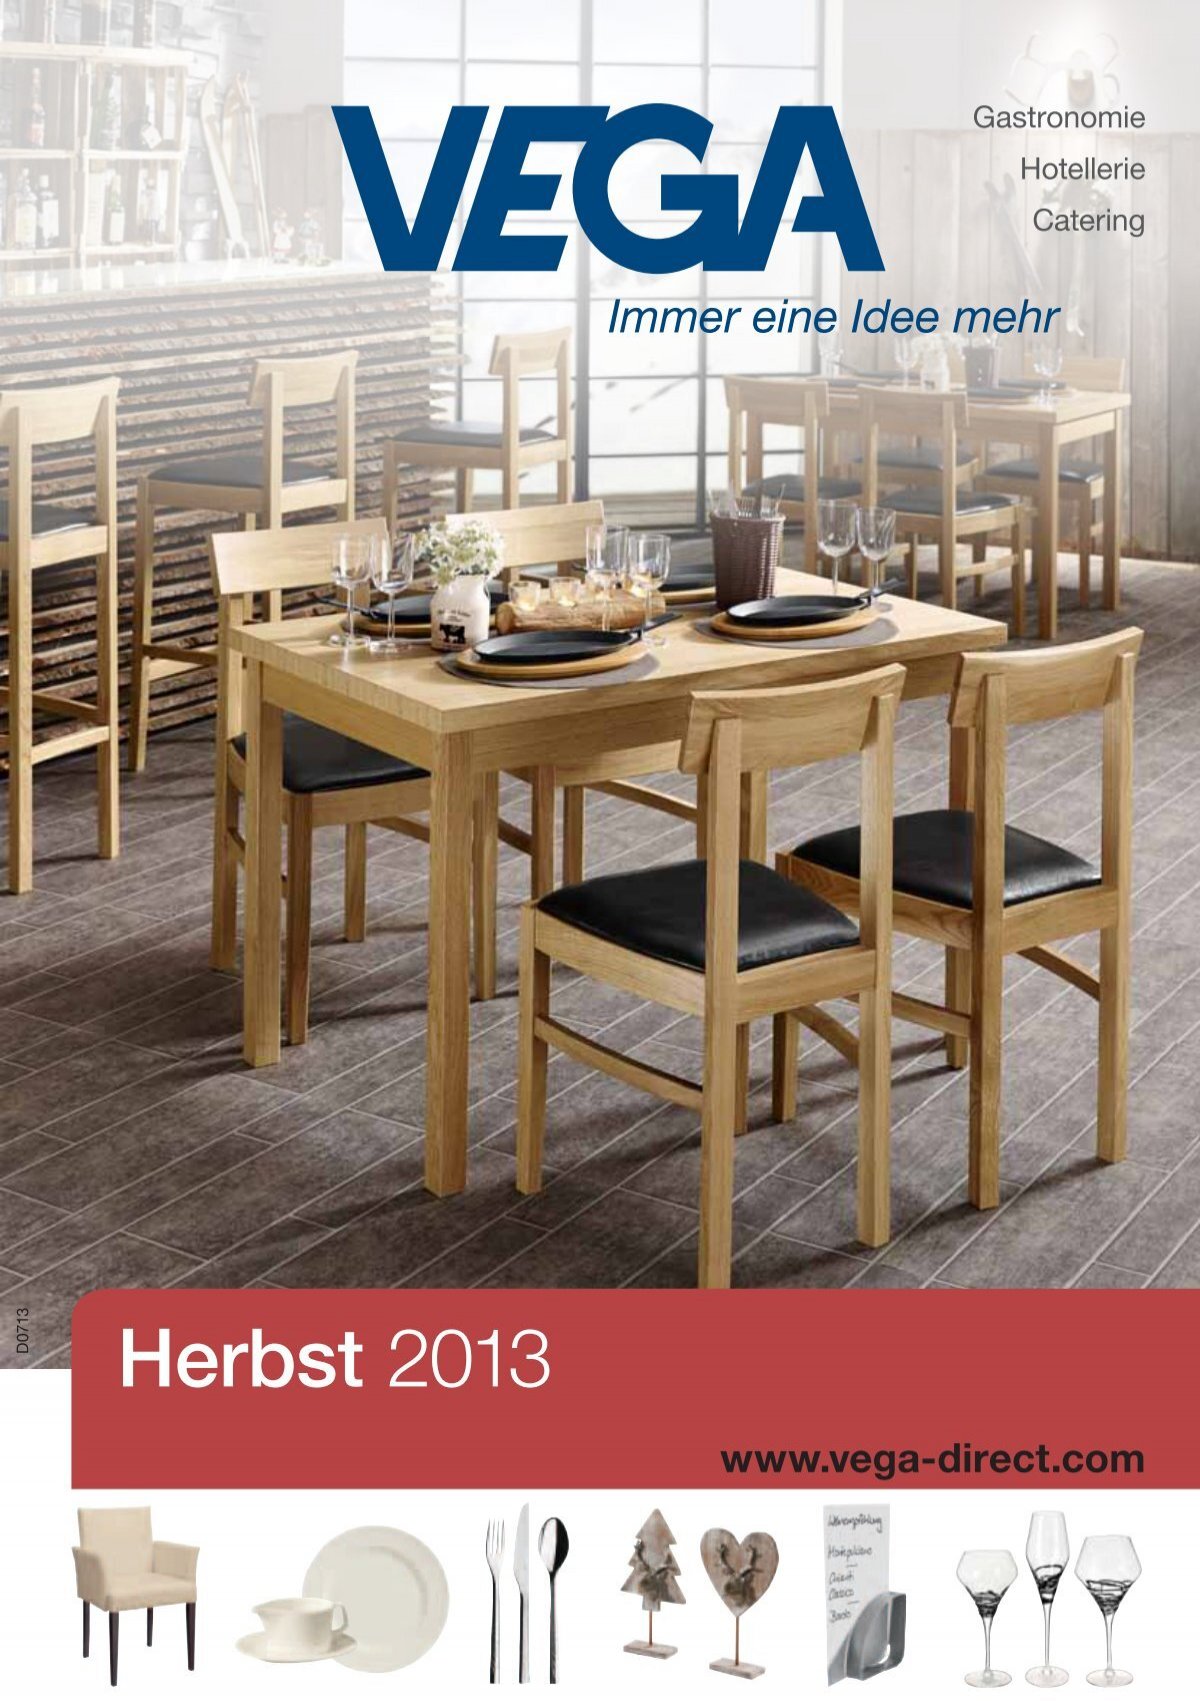 2013 von Vertrieb Herbst Vega GmbH - Gastronomiebedarf